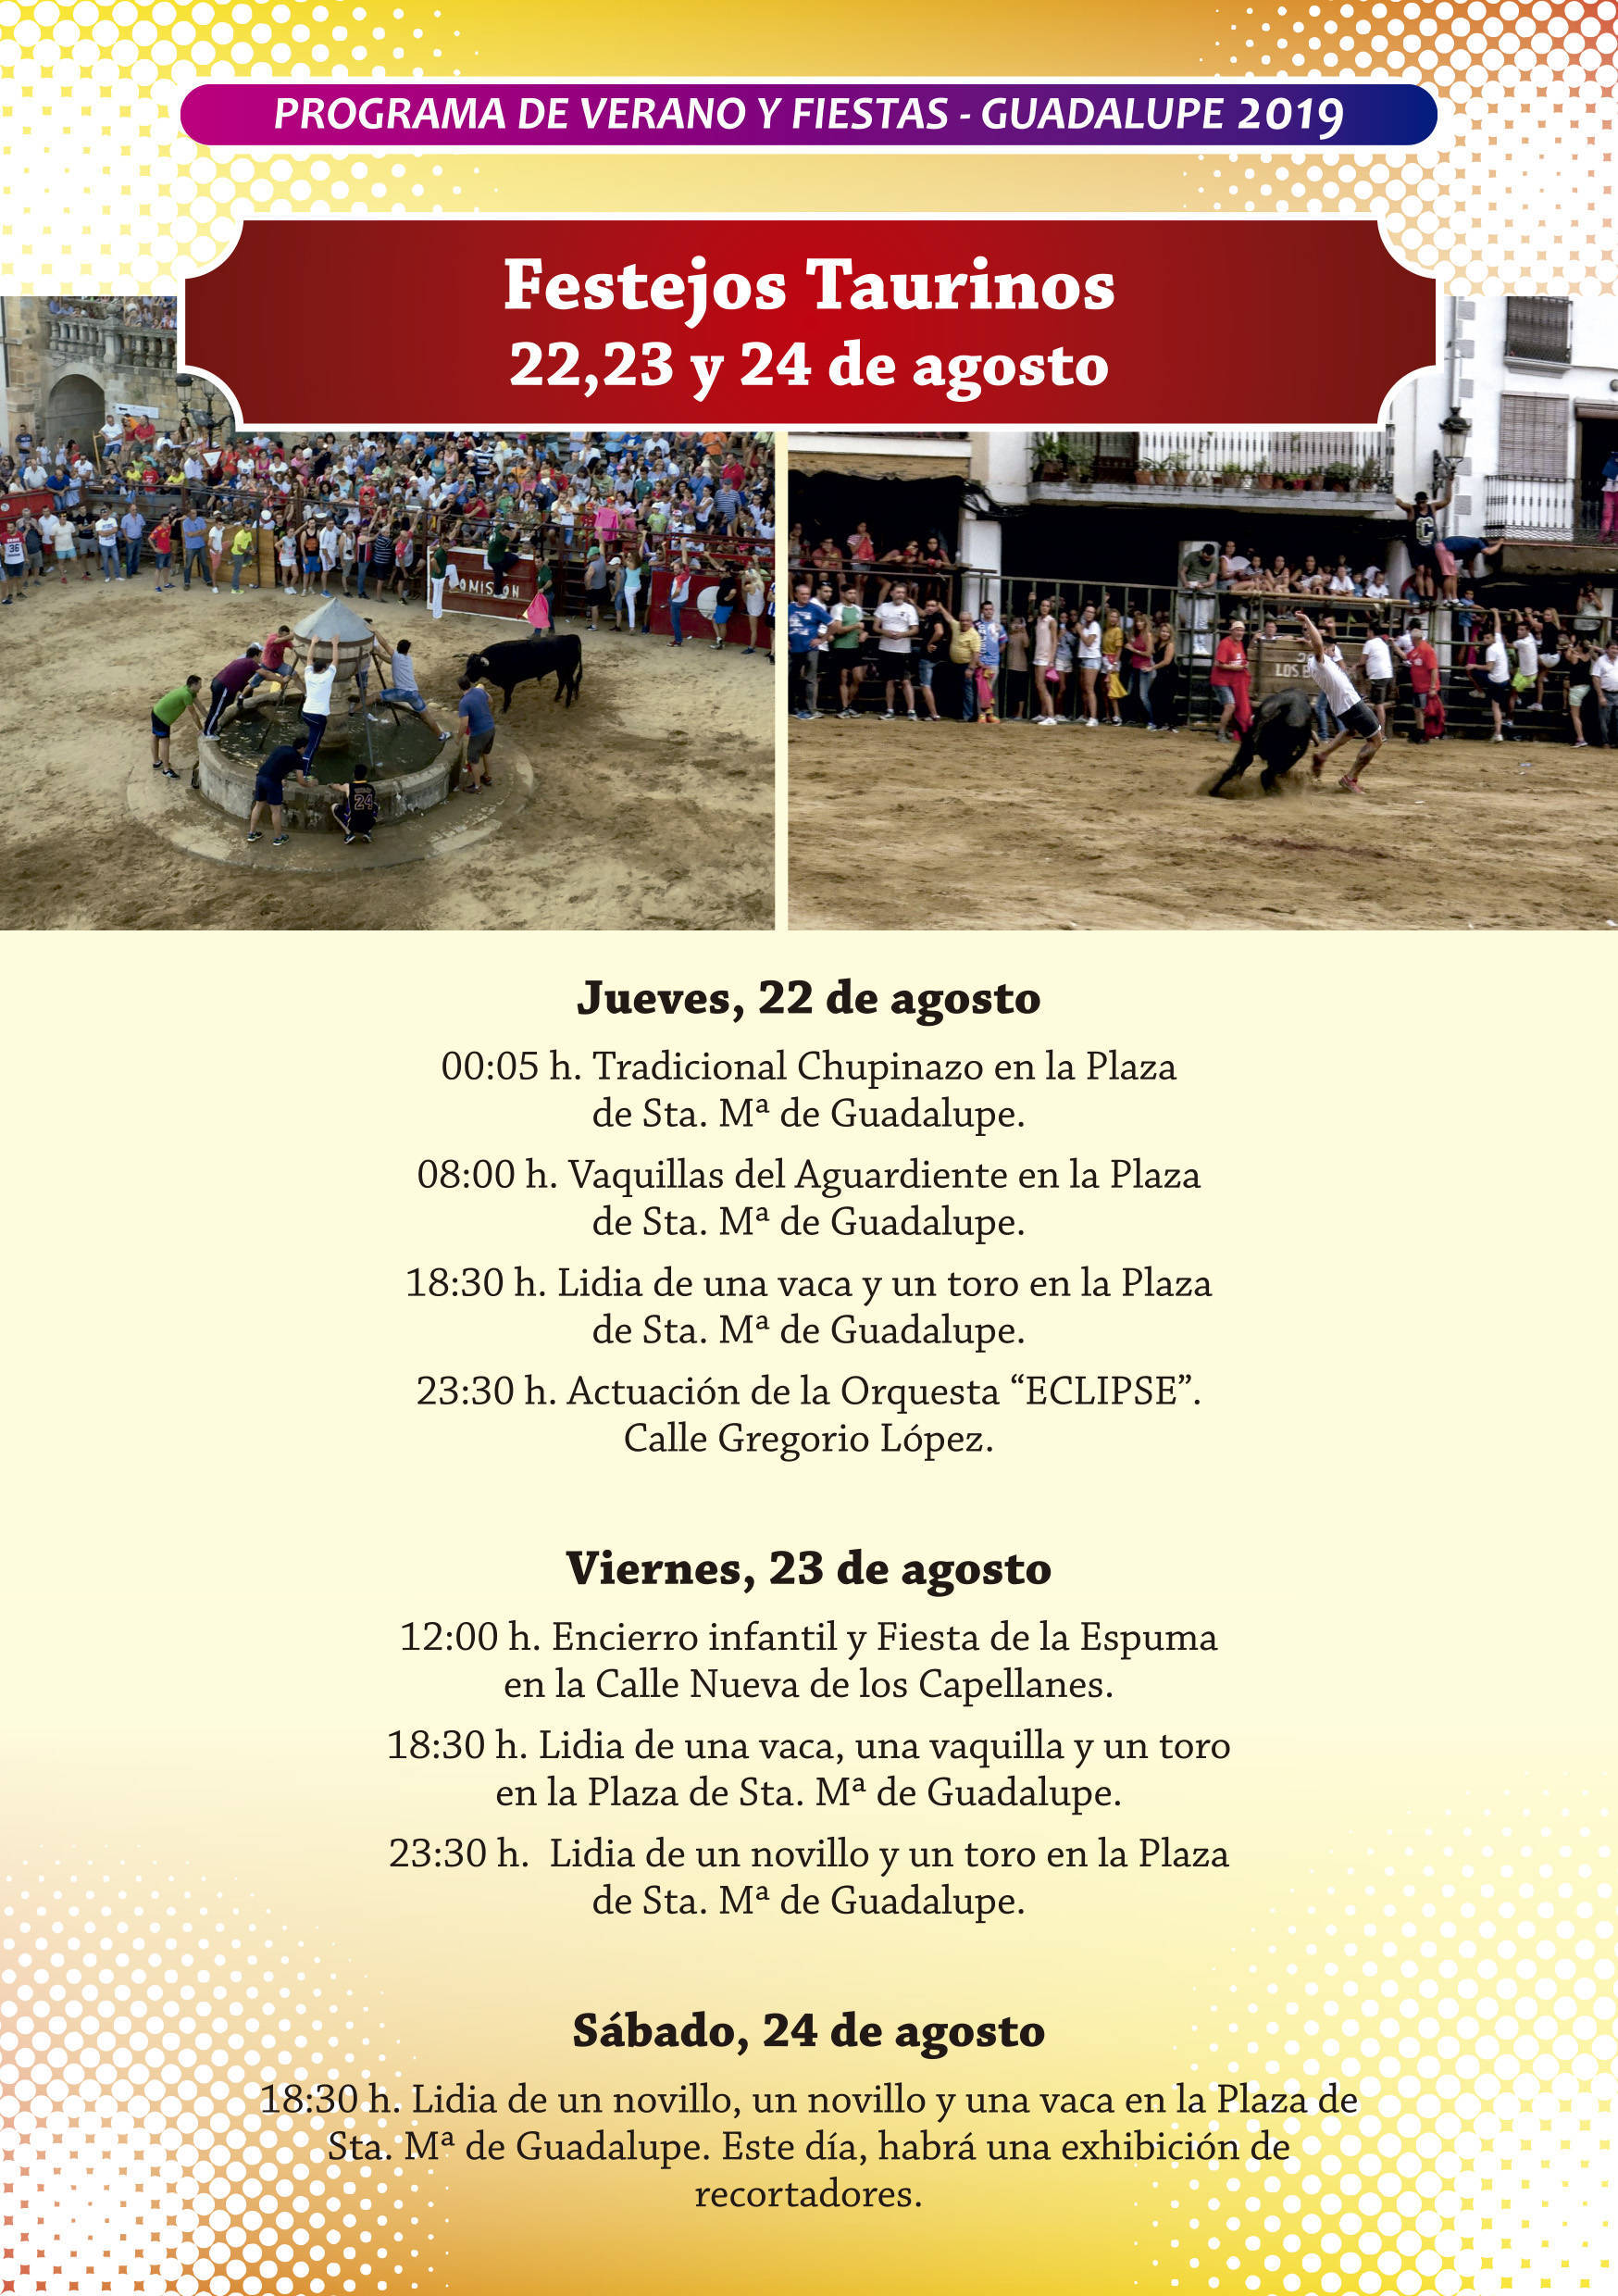 Programa de verano y fiestas 2019 - Guadalupe (Cáceres) 11